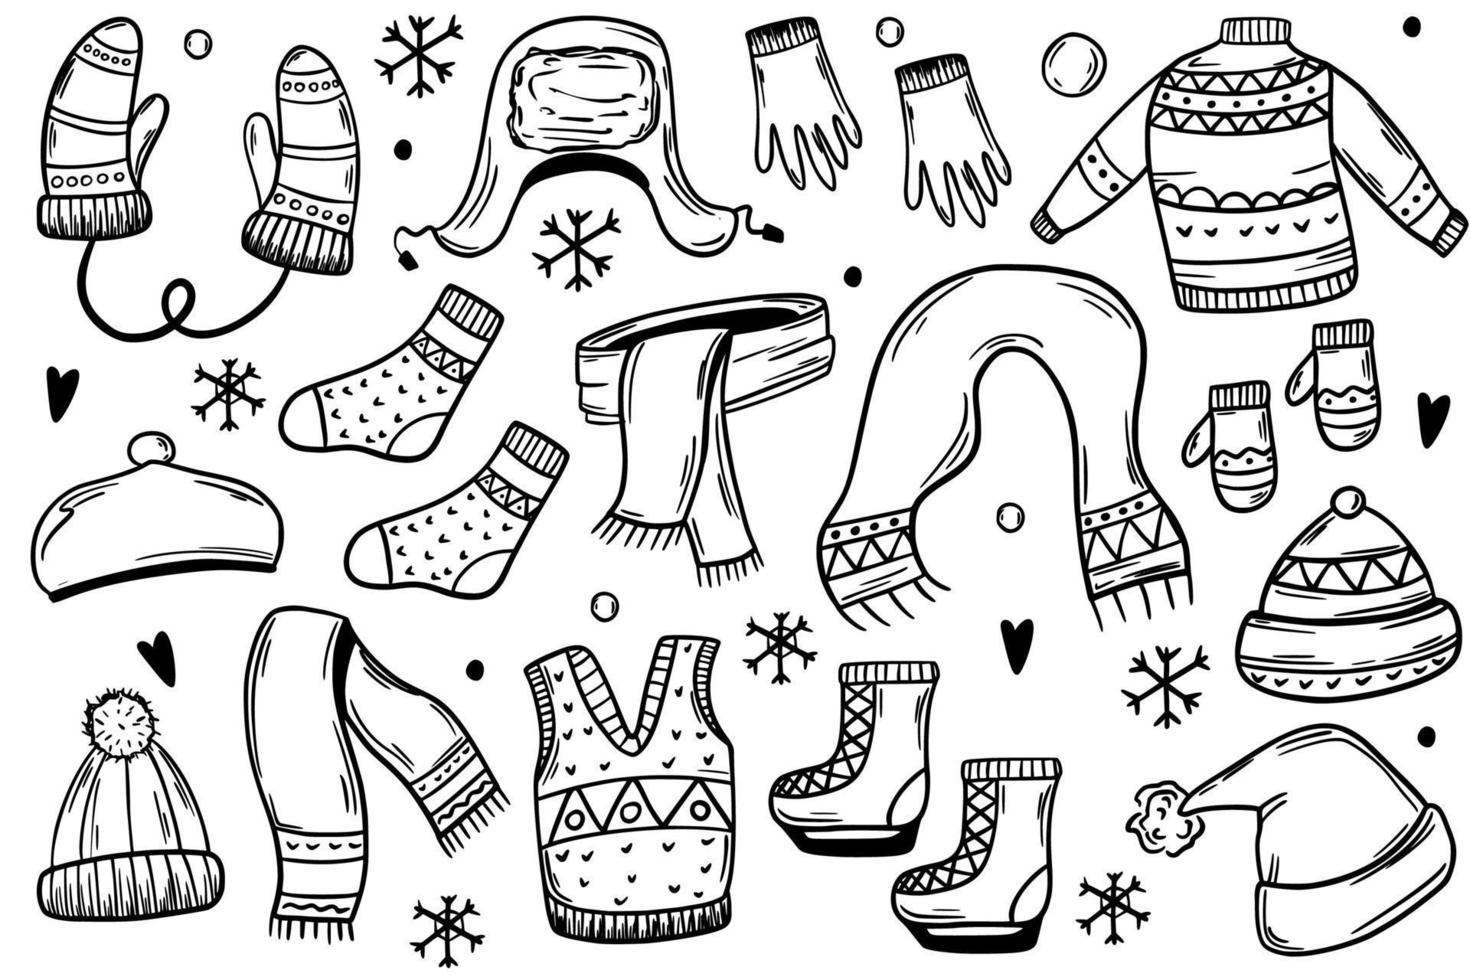 reeks van winter kleren, hoeden, handschoenen, schaatsen, wanten. warm kleren. vector illustratie in schetsen stijl.